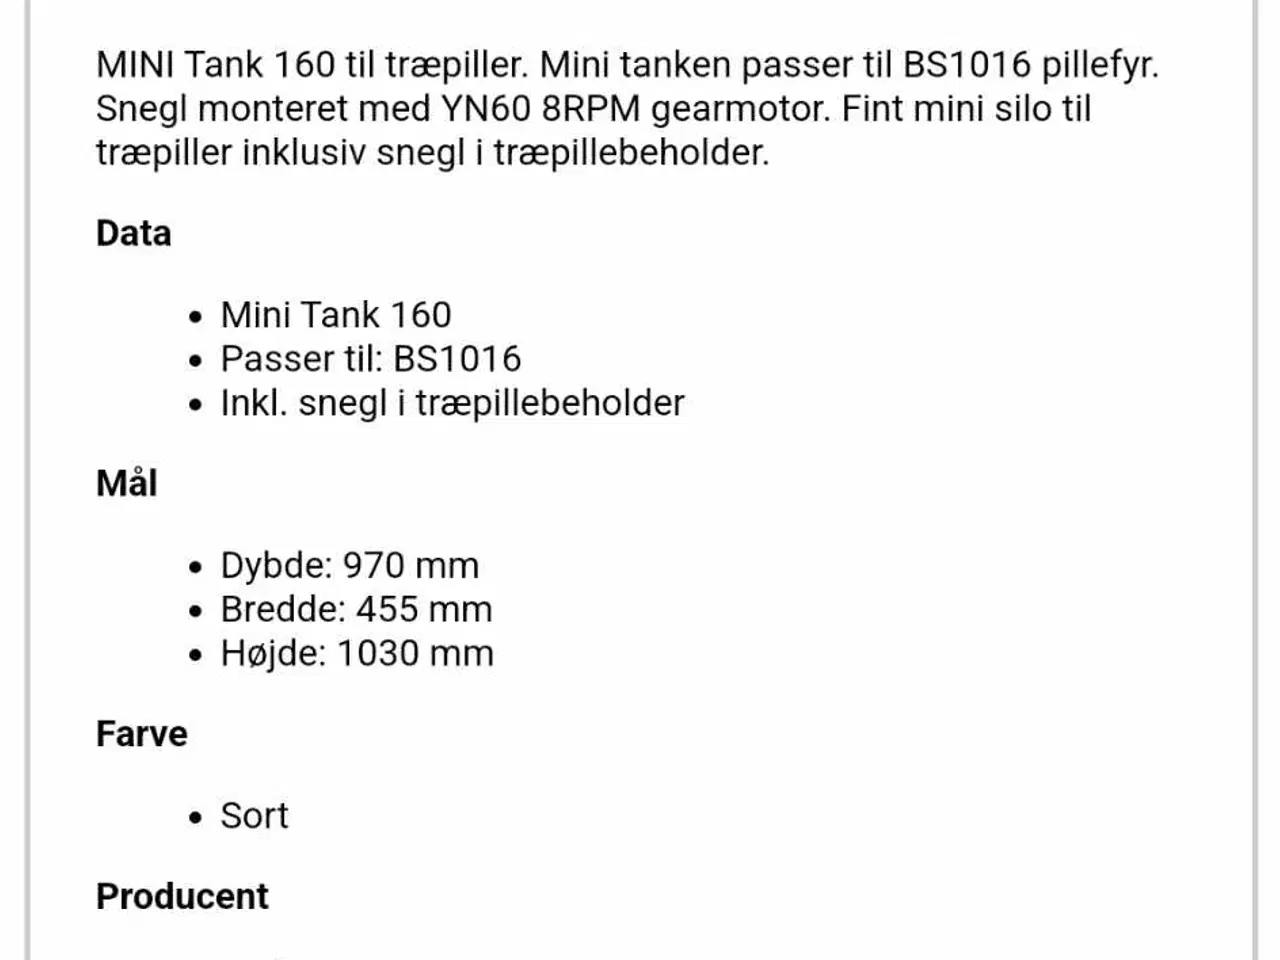 Billede 5 - Pille silo - Mini Tank 160